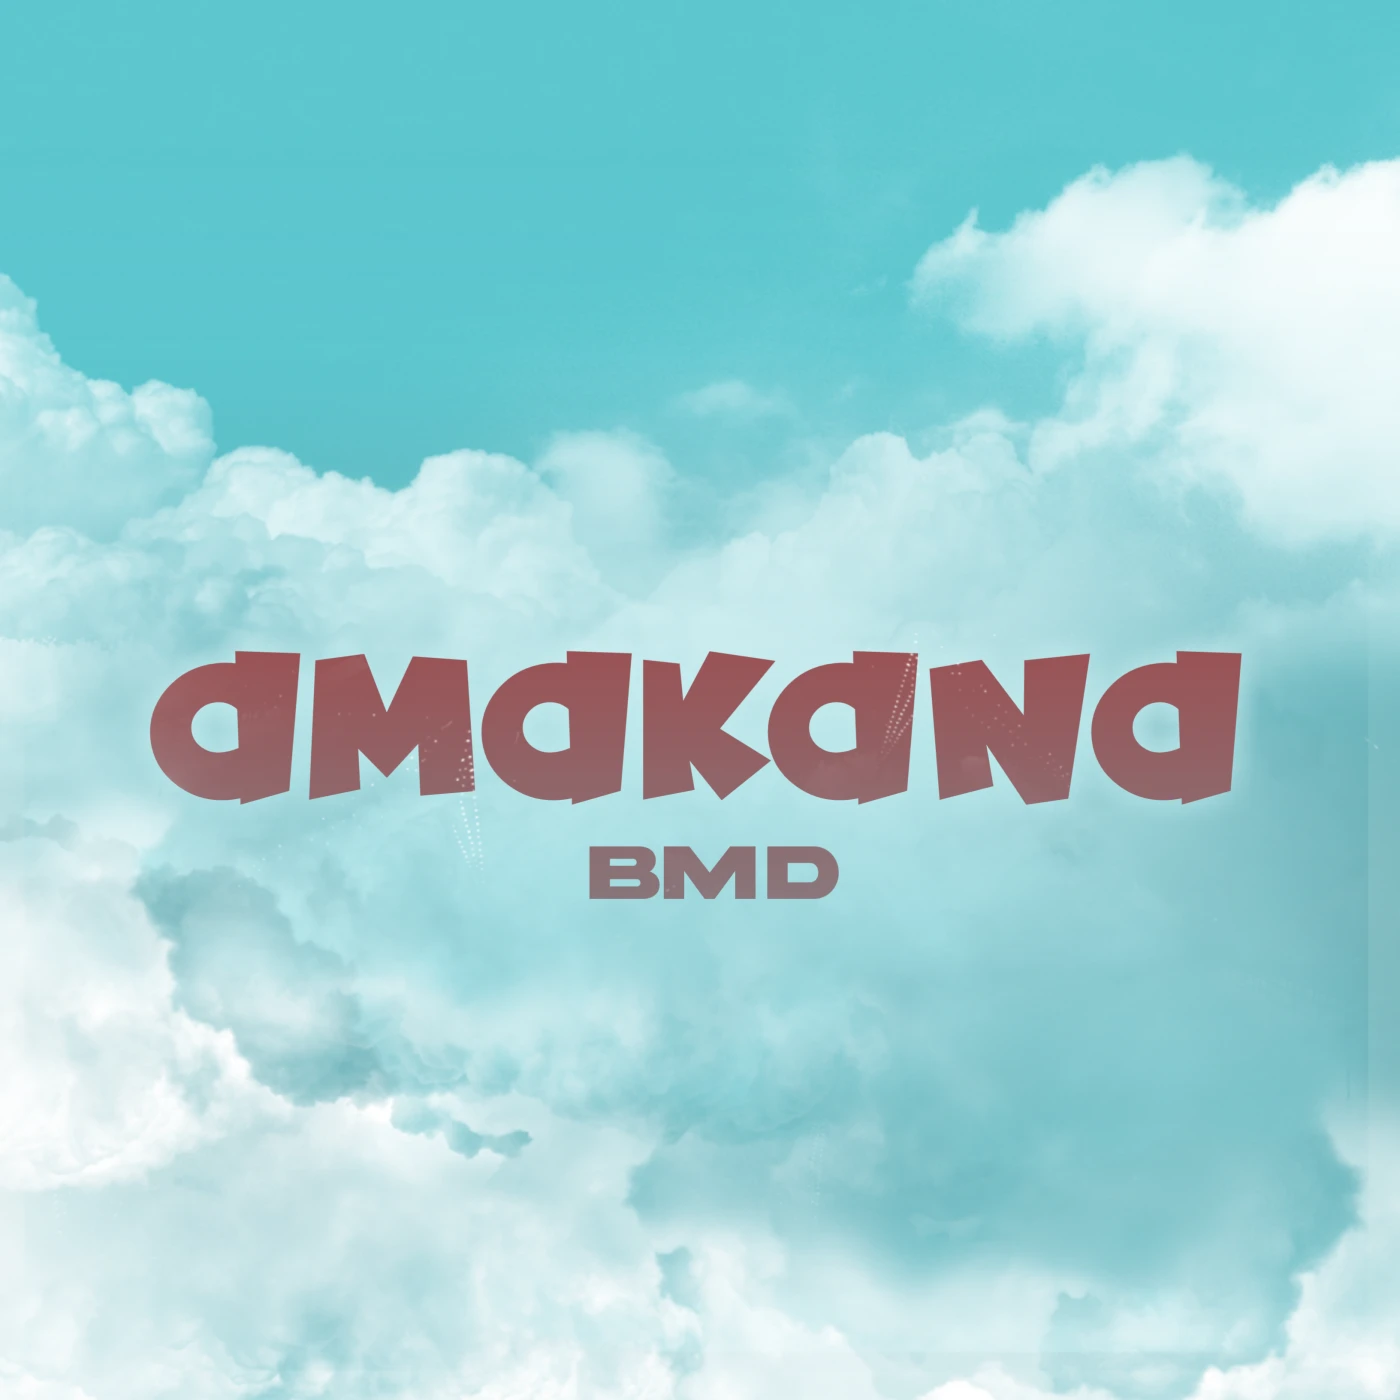 bmd-amakana-bmd-Just Malawi Music